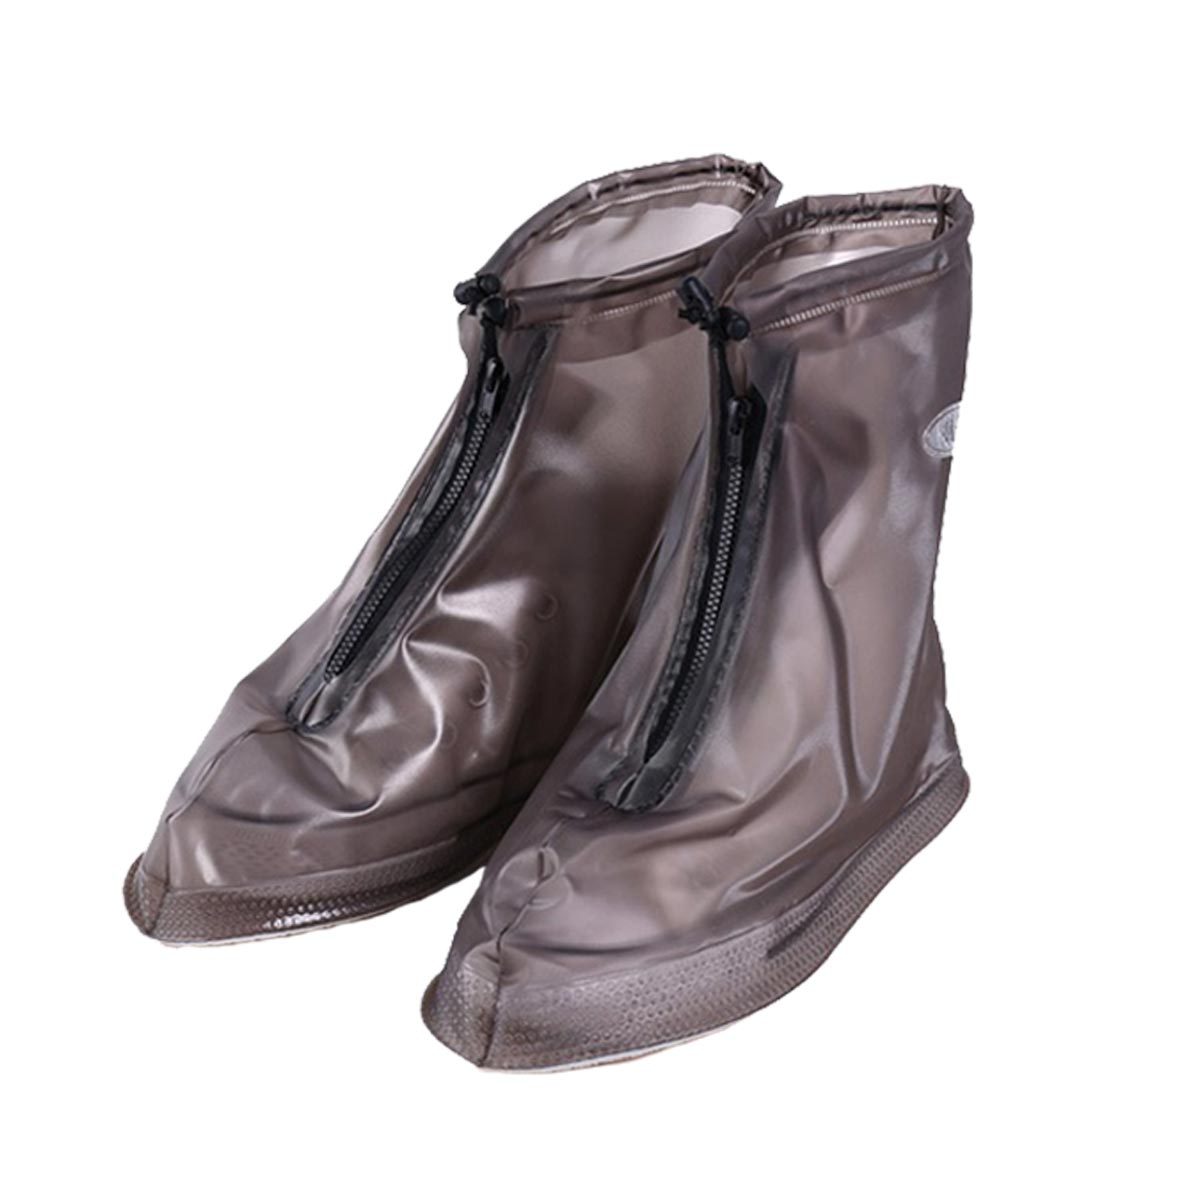 シューズカバー レインシューズ 雨用 靴カバー 防水 チャック式 ブーツ 